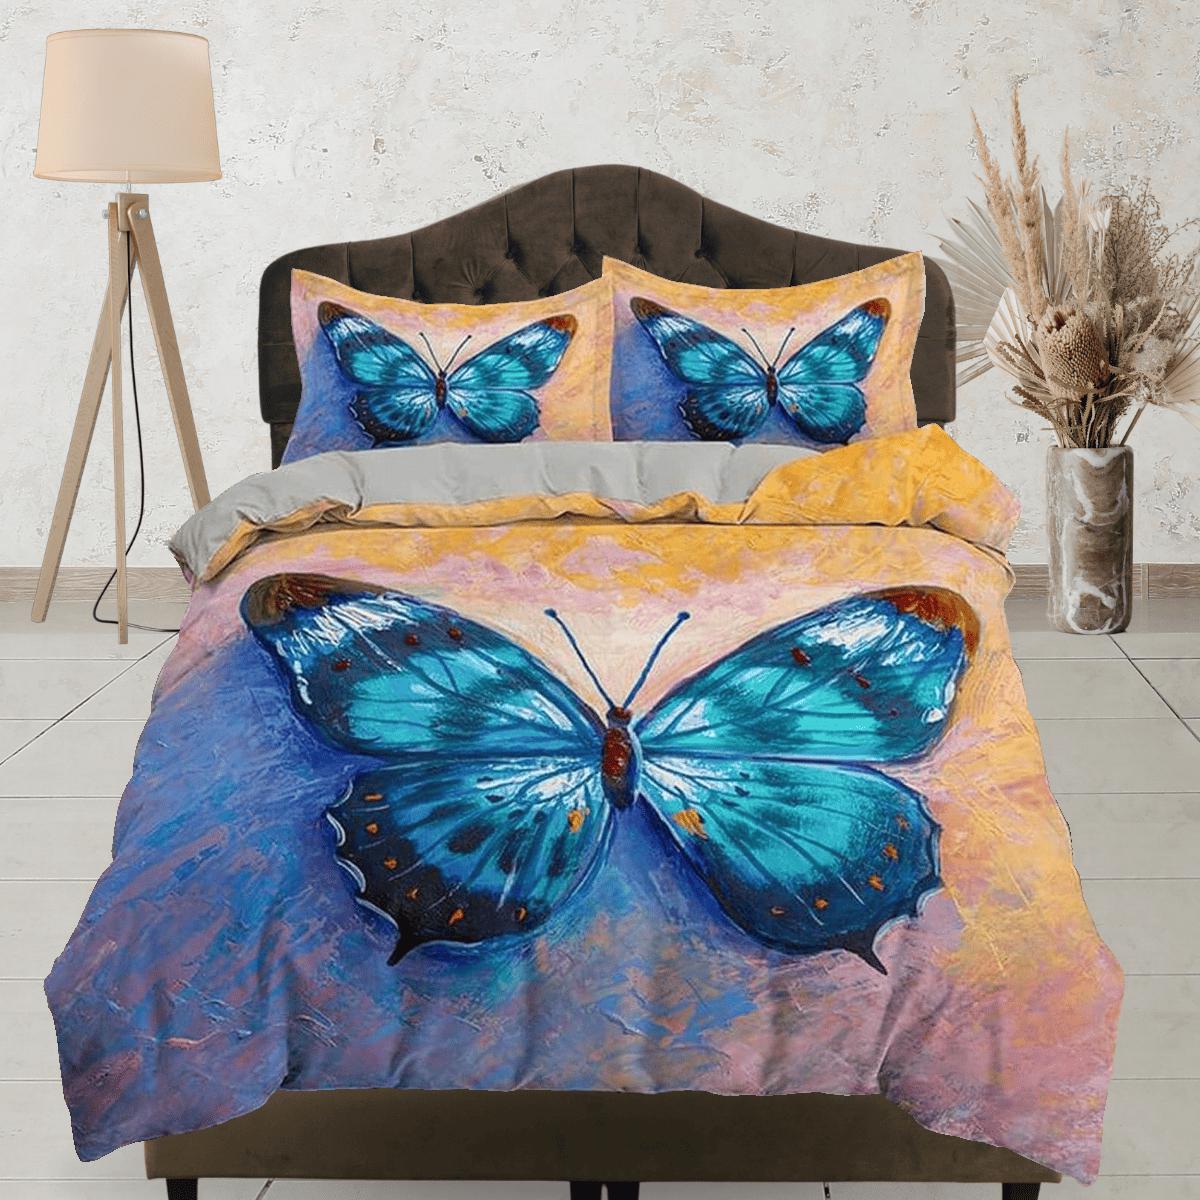 daintyduvet Artistic blue butterfly bedding boho chic aesthetic yellow orange duvet cover, dorm bedding full size duvet king queen twin, nursery toddler